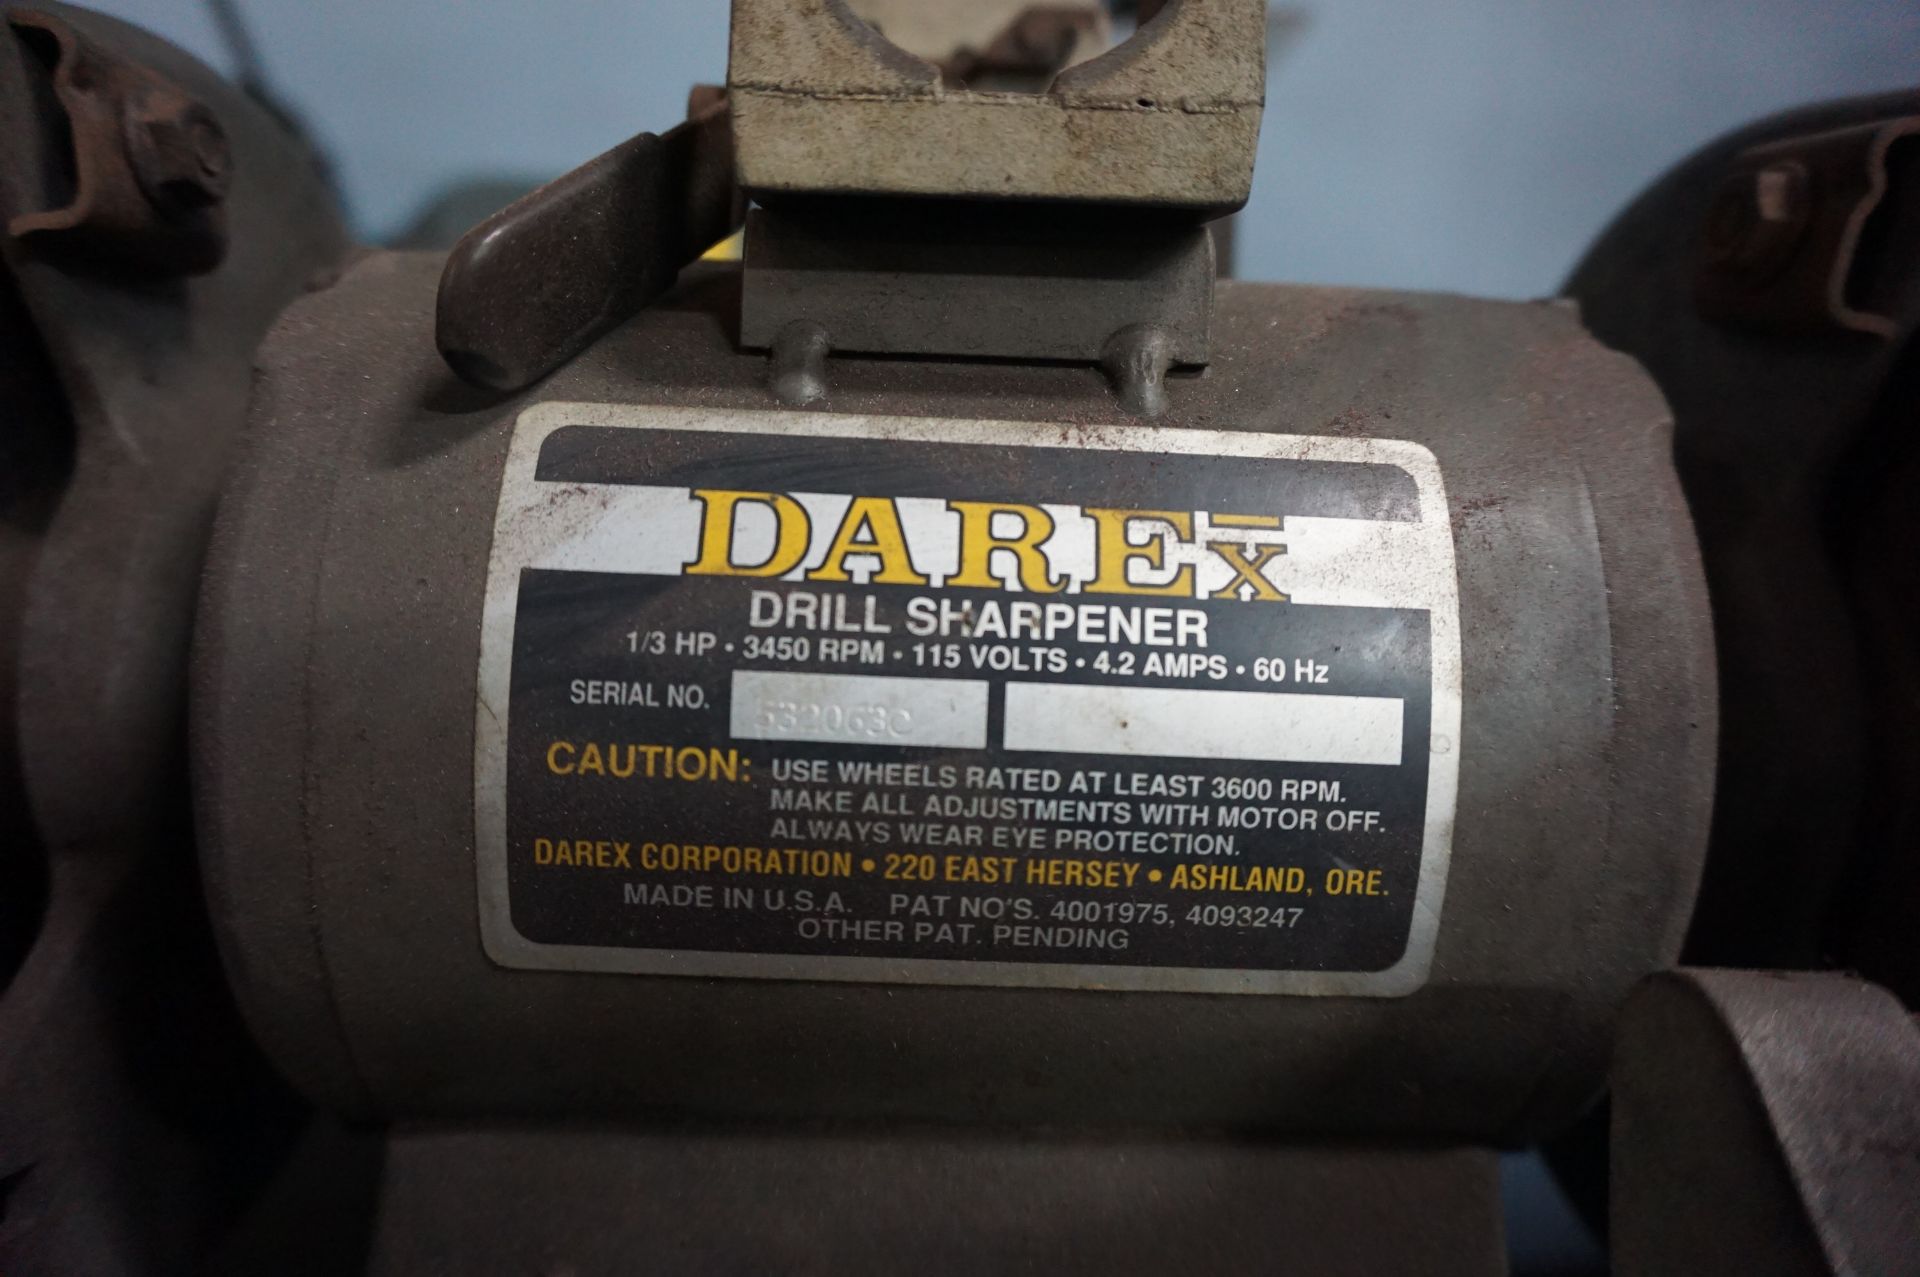 LOT TO INCLUDE: (1) DAREX DRILL SHARPENER, 1/3 HP, 3450 RPM, (1) BALDOR PEDESTAL GRINDER MODEL 7307, - Image 3 of 3